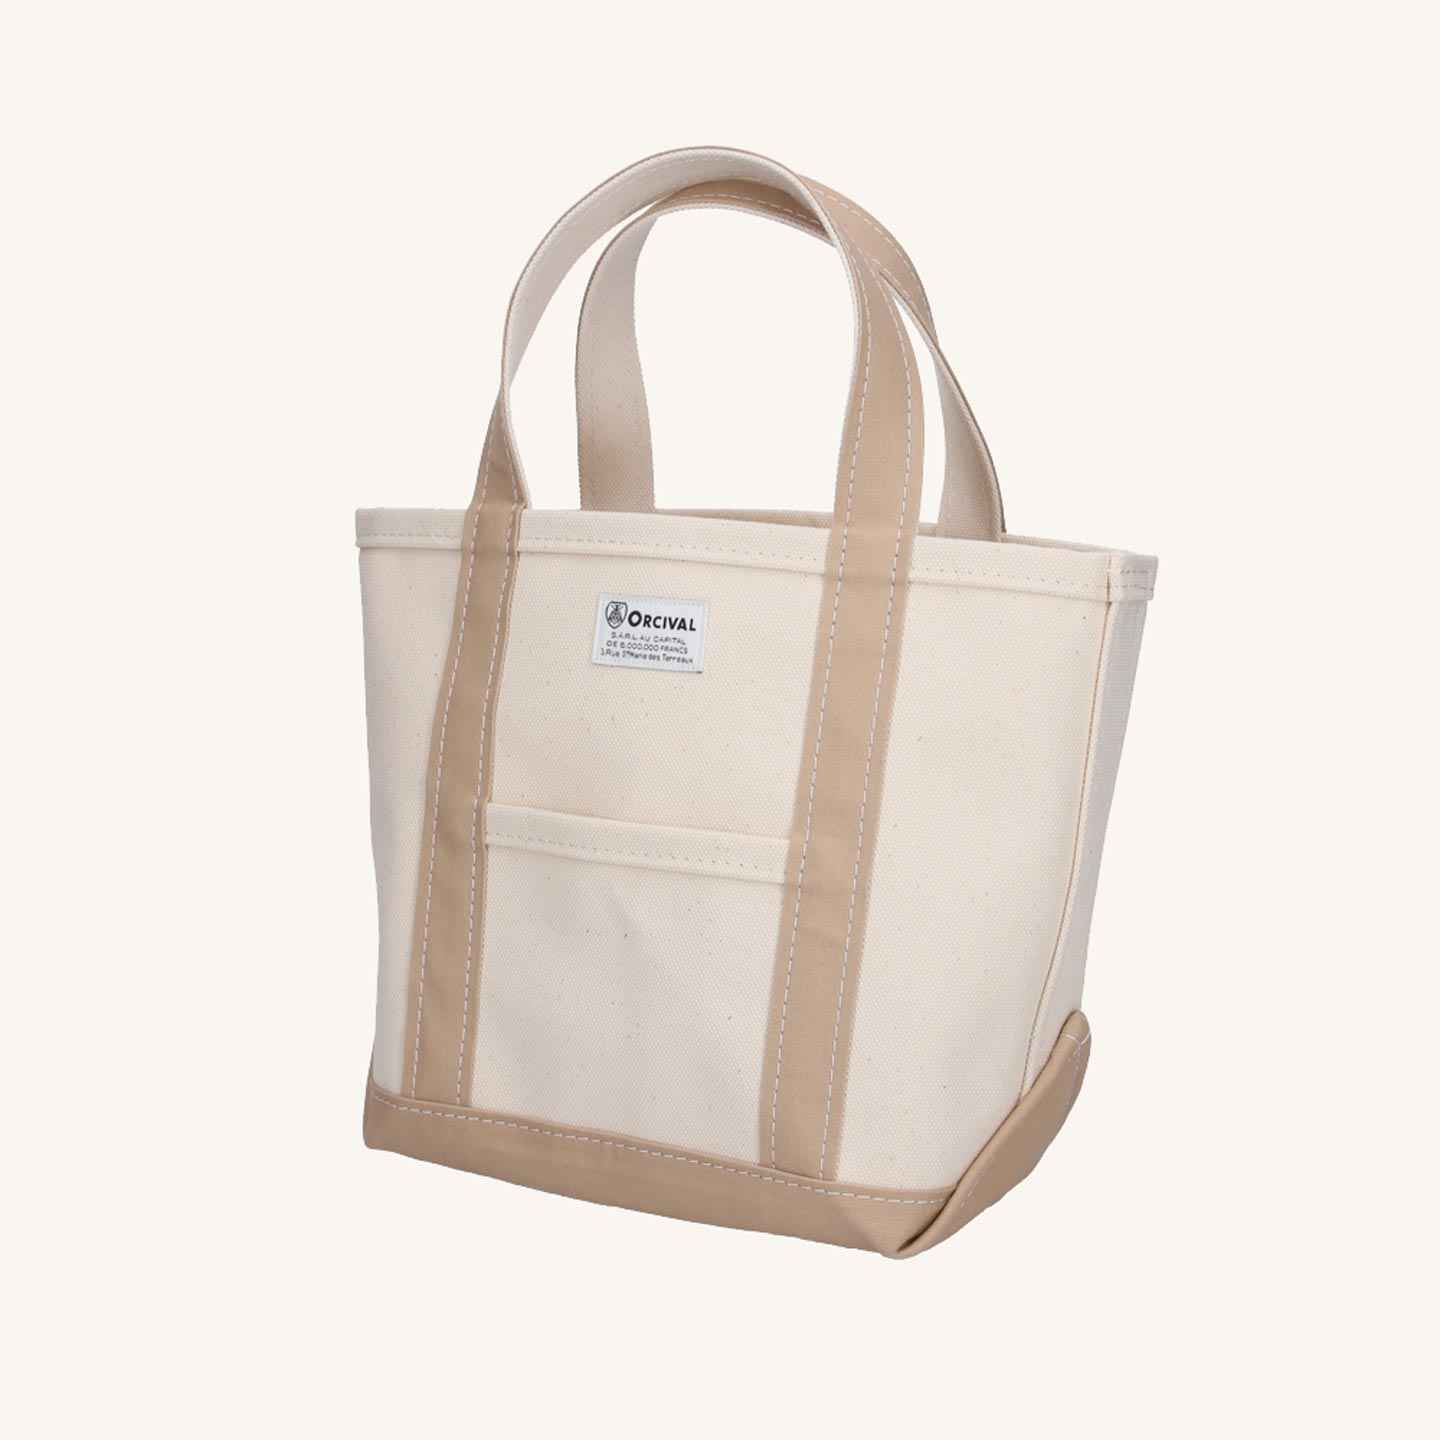 The Ecru / Medium Beige tote bag, in a medium size, by Orcival